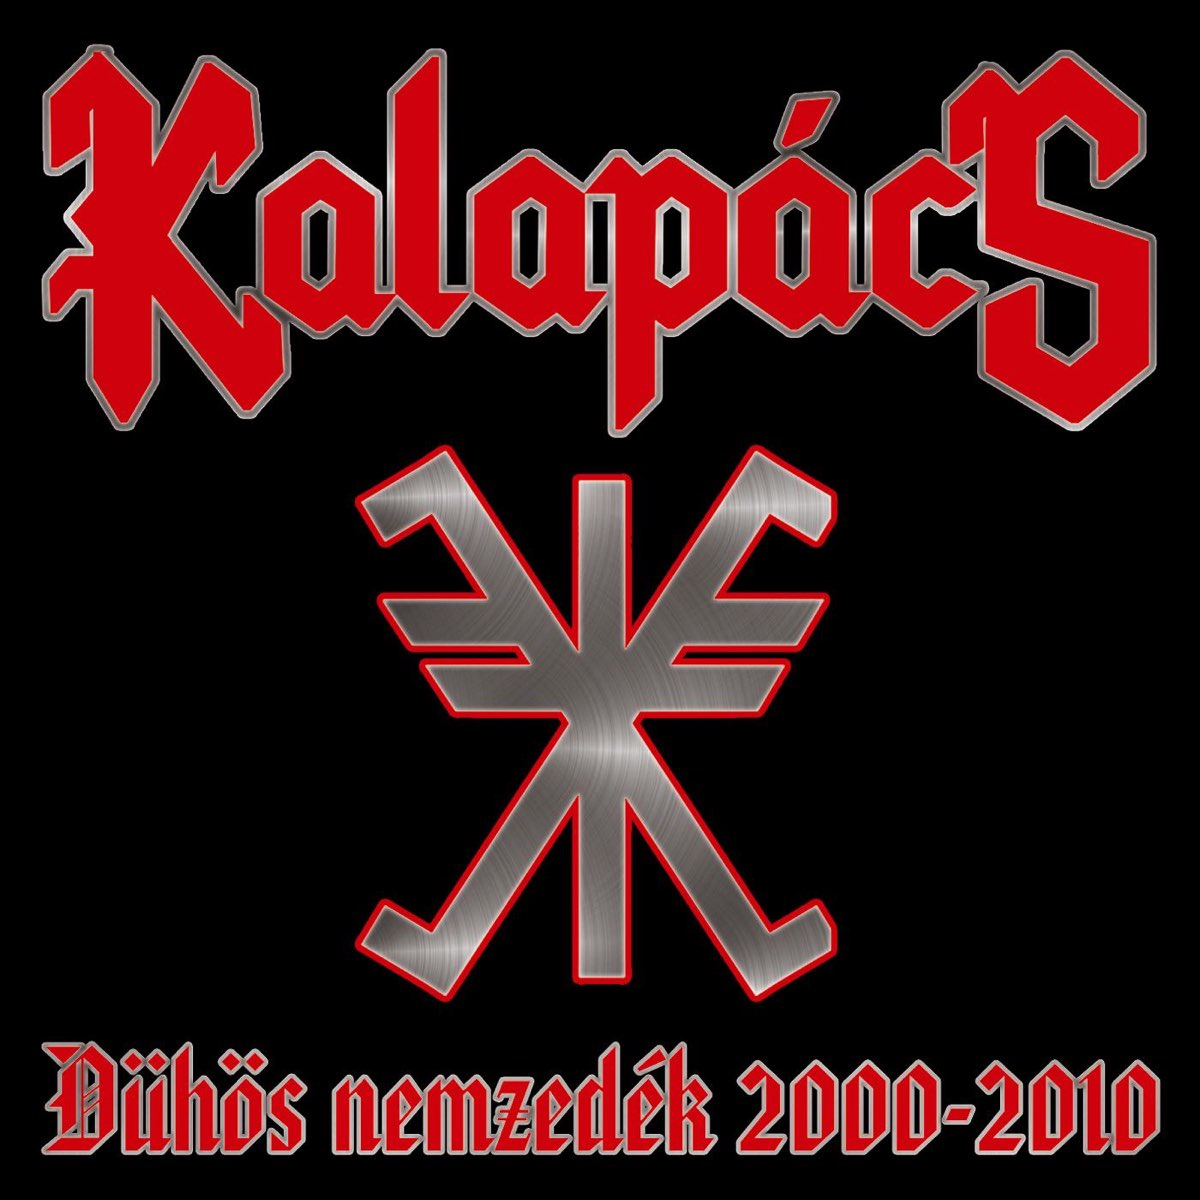 Dühös Nemzedék 2000-2010 - Album by Kalapács - Apple Music